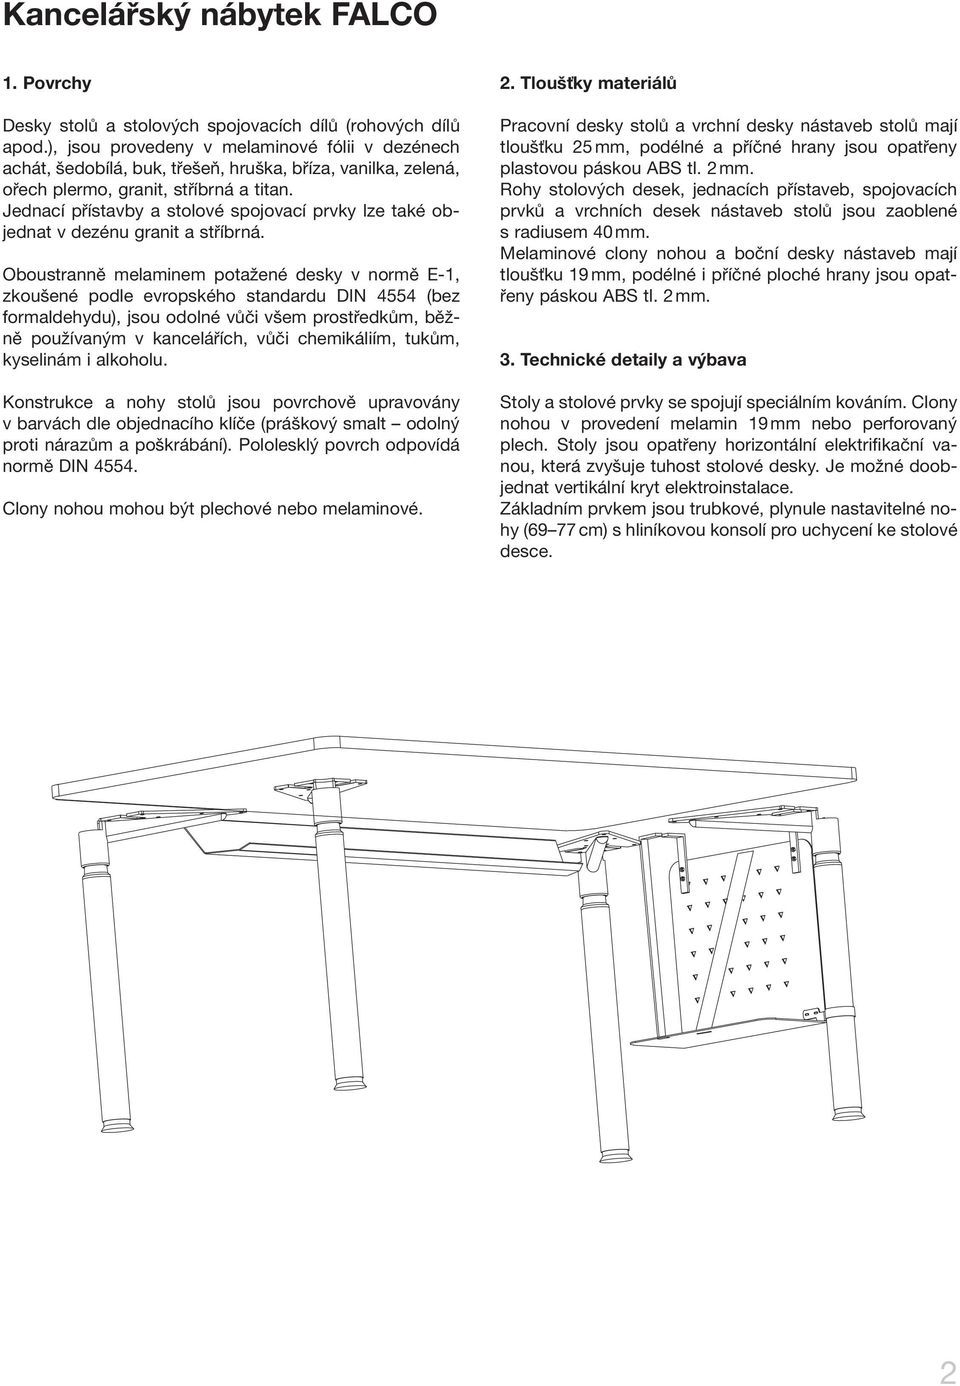 Jednací přístavby a stolové spojovací prvky lze také objednat v dezénu granit a stříbrná.